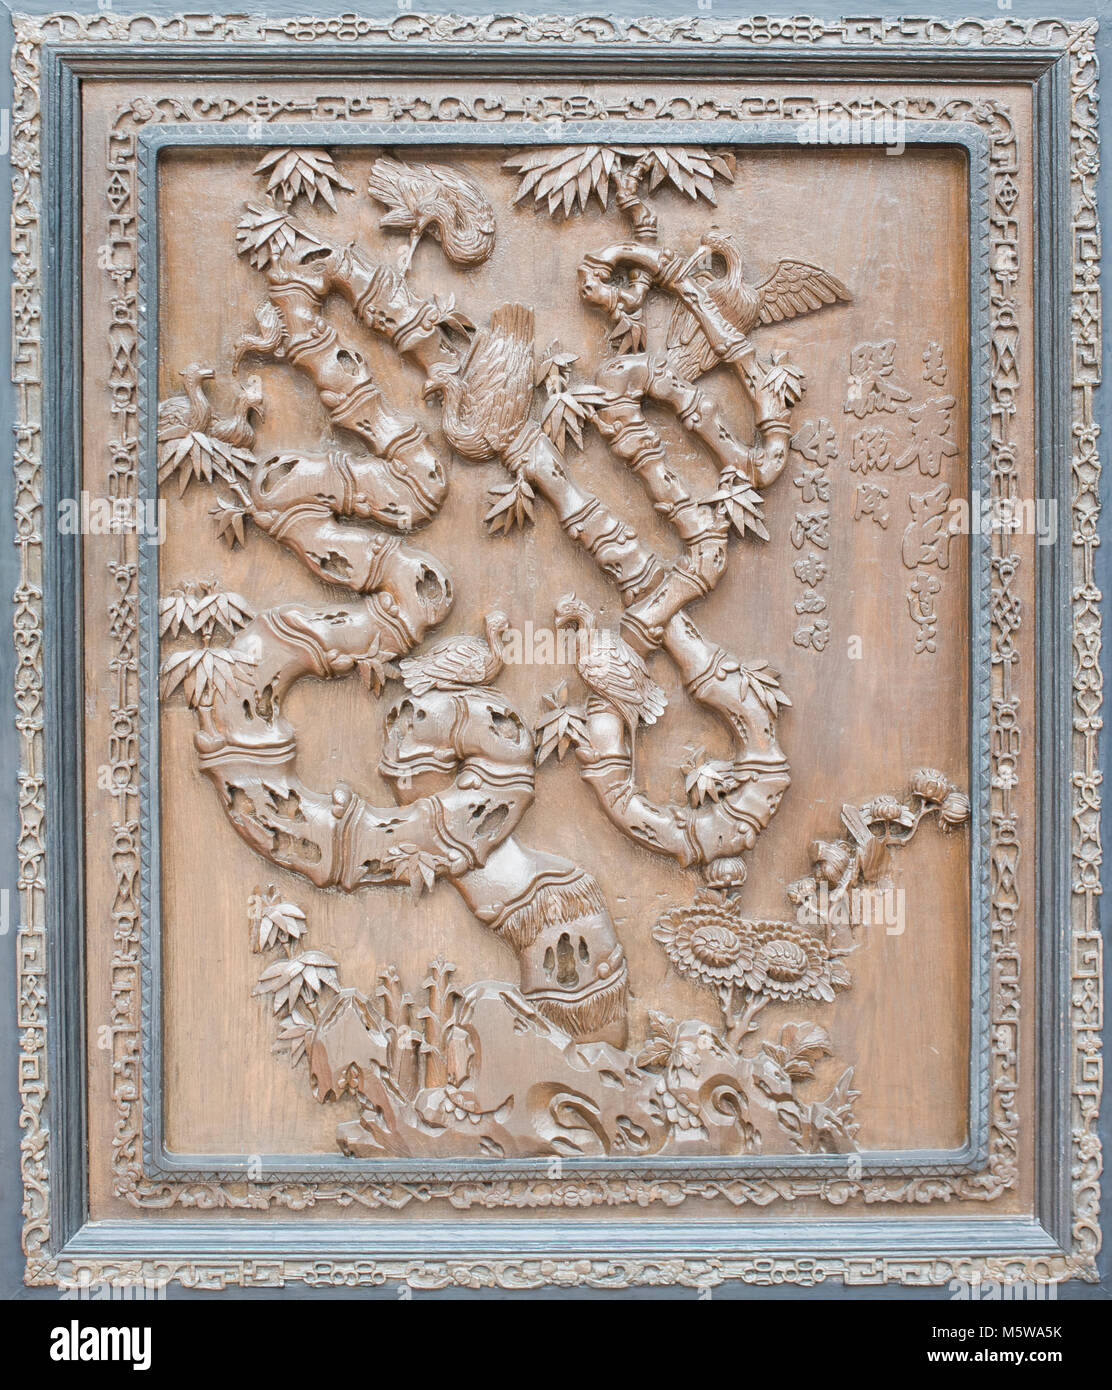 Antiche sculture in legno i caratteri cinesi 'fu', che significa benedizione e buona fortuna. Foto Stock